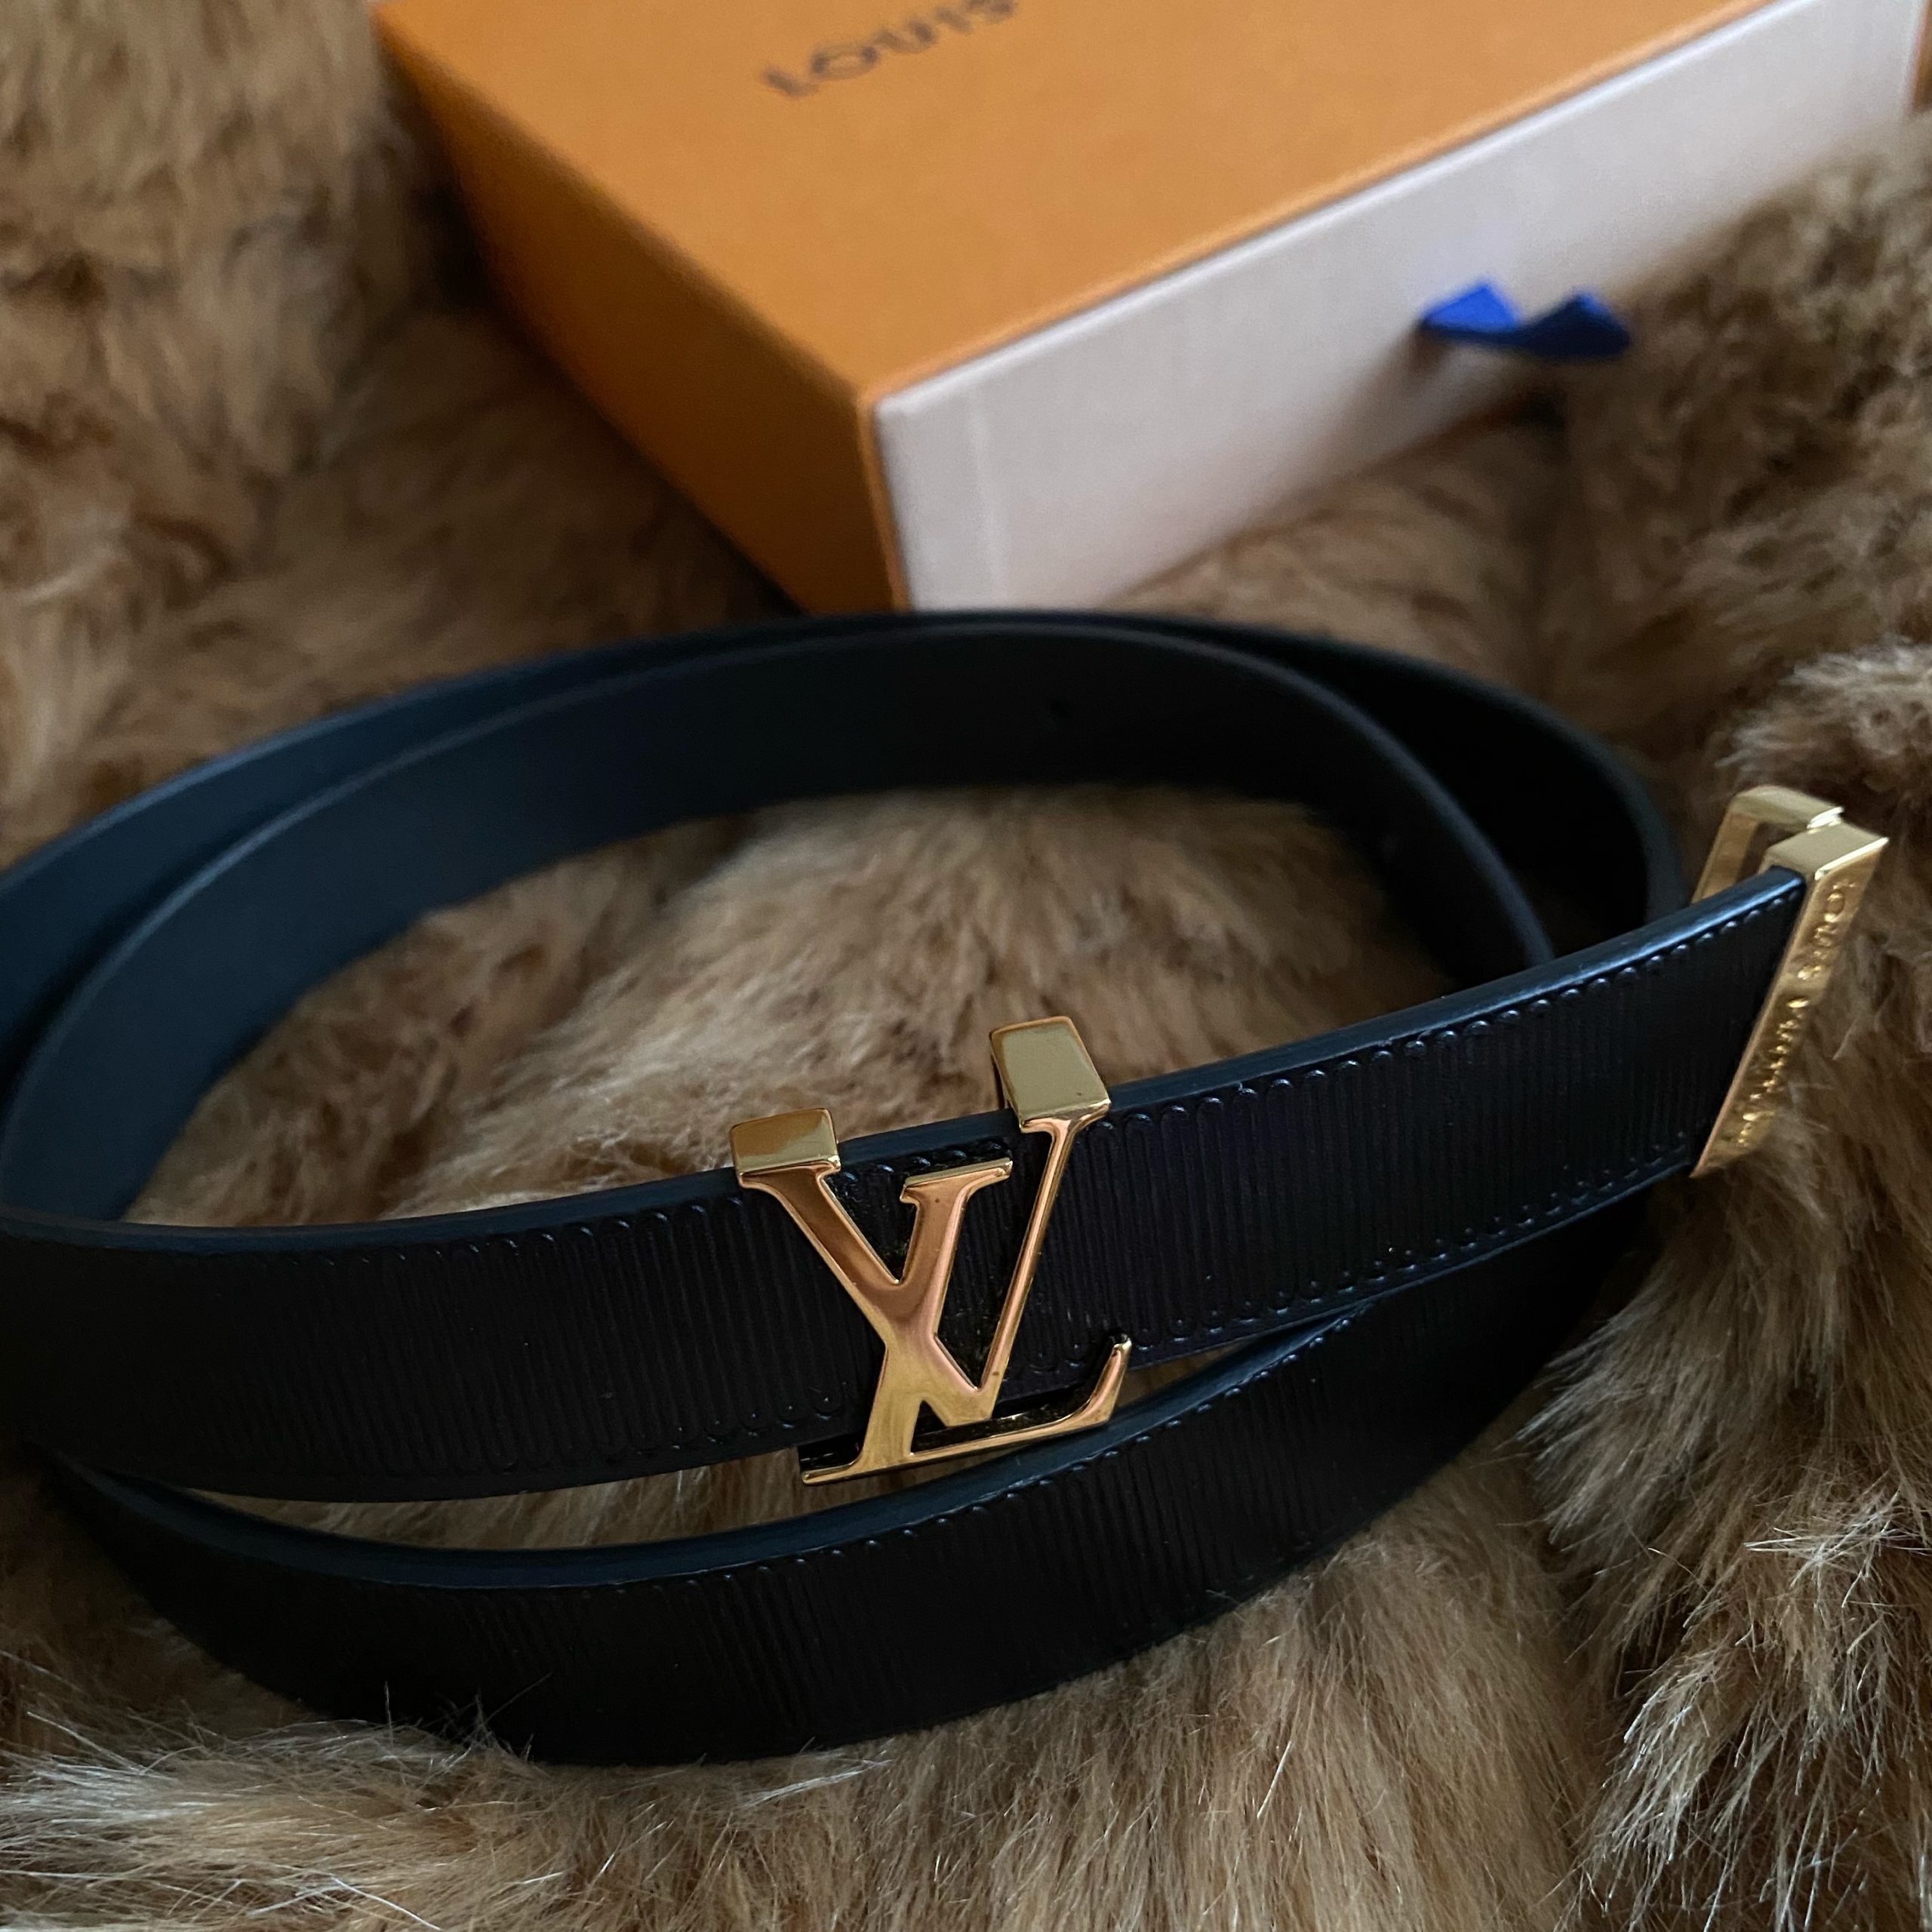 Louis Vuitton LV Initiales 20mm Belt Black Calf. Size 70 cm